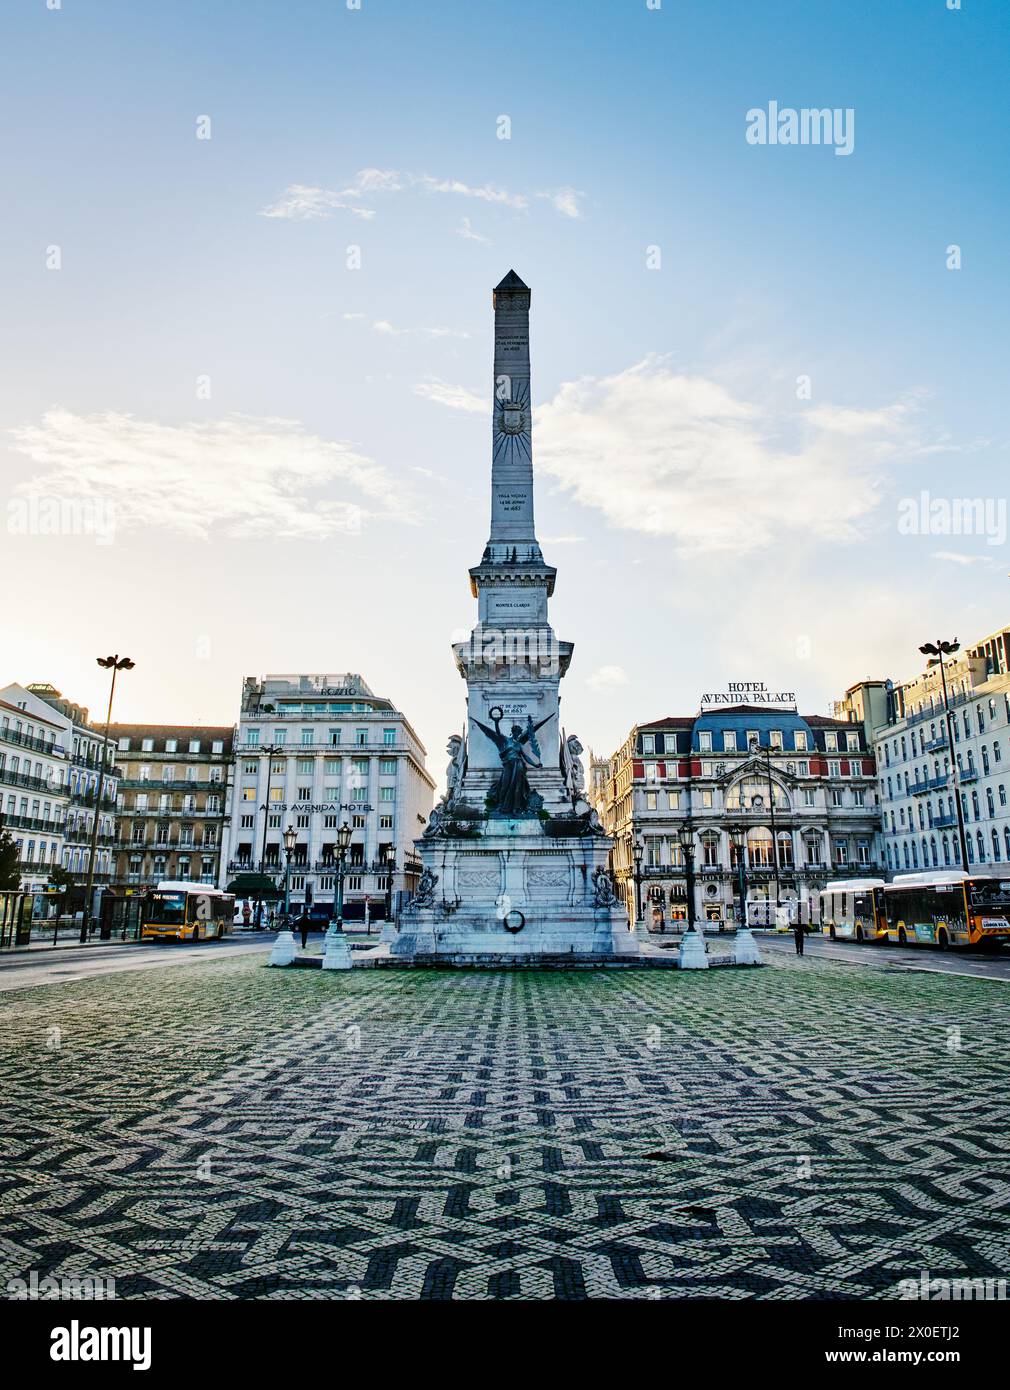 Blick auf den Platz Restauradores mit dem Obelisk Monumento aos Restauradores (Denkmal für die Restauratoren) in der Mitte an einem Herbsttag in Lissabon, Portu Stockfoto